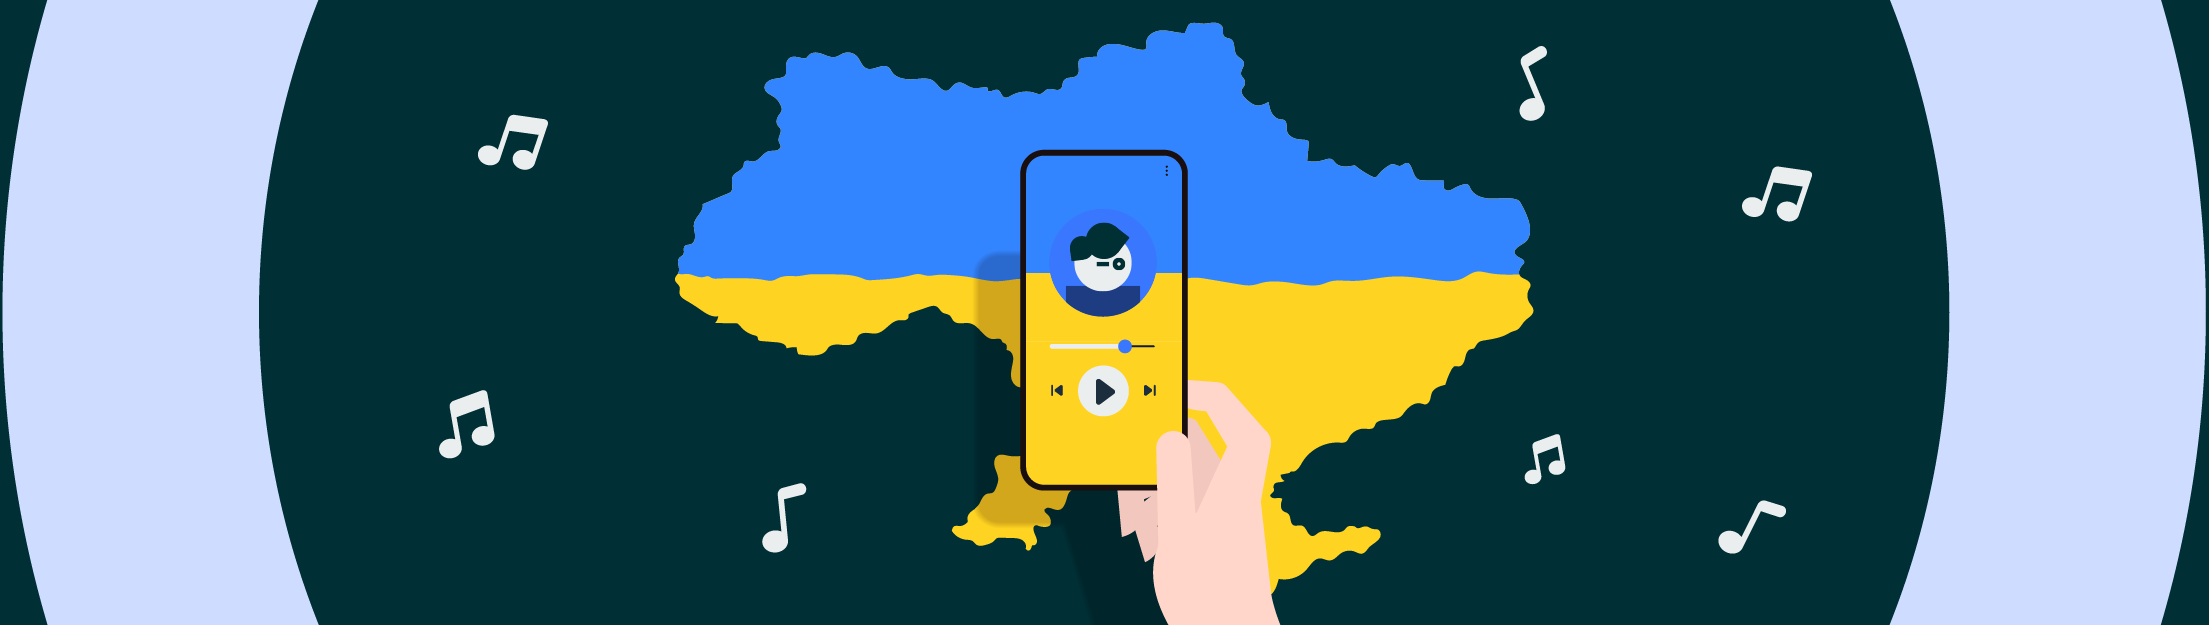 Як звучить Україна